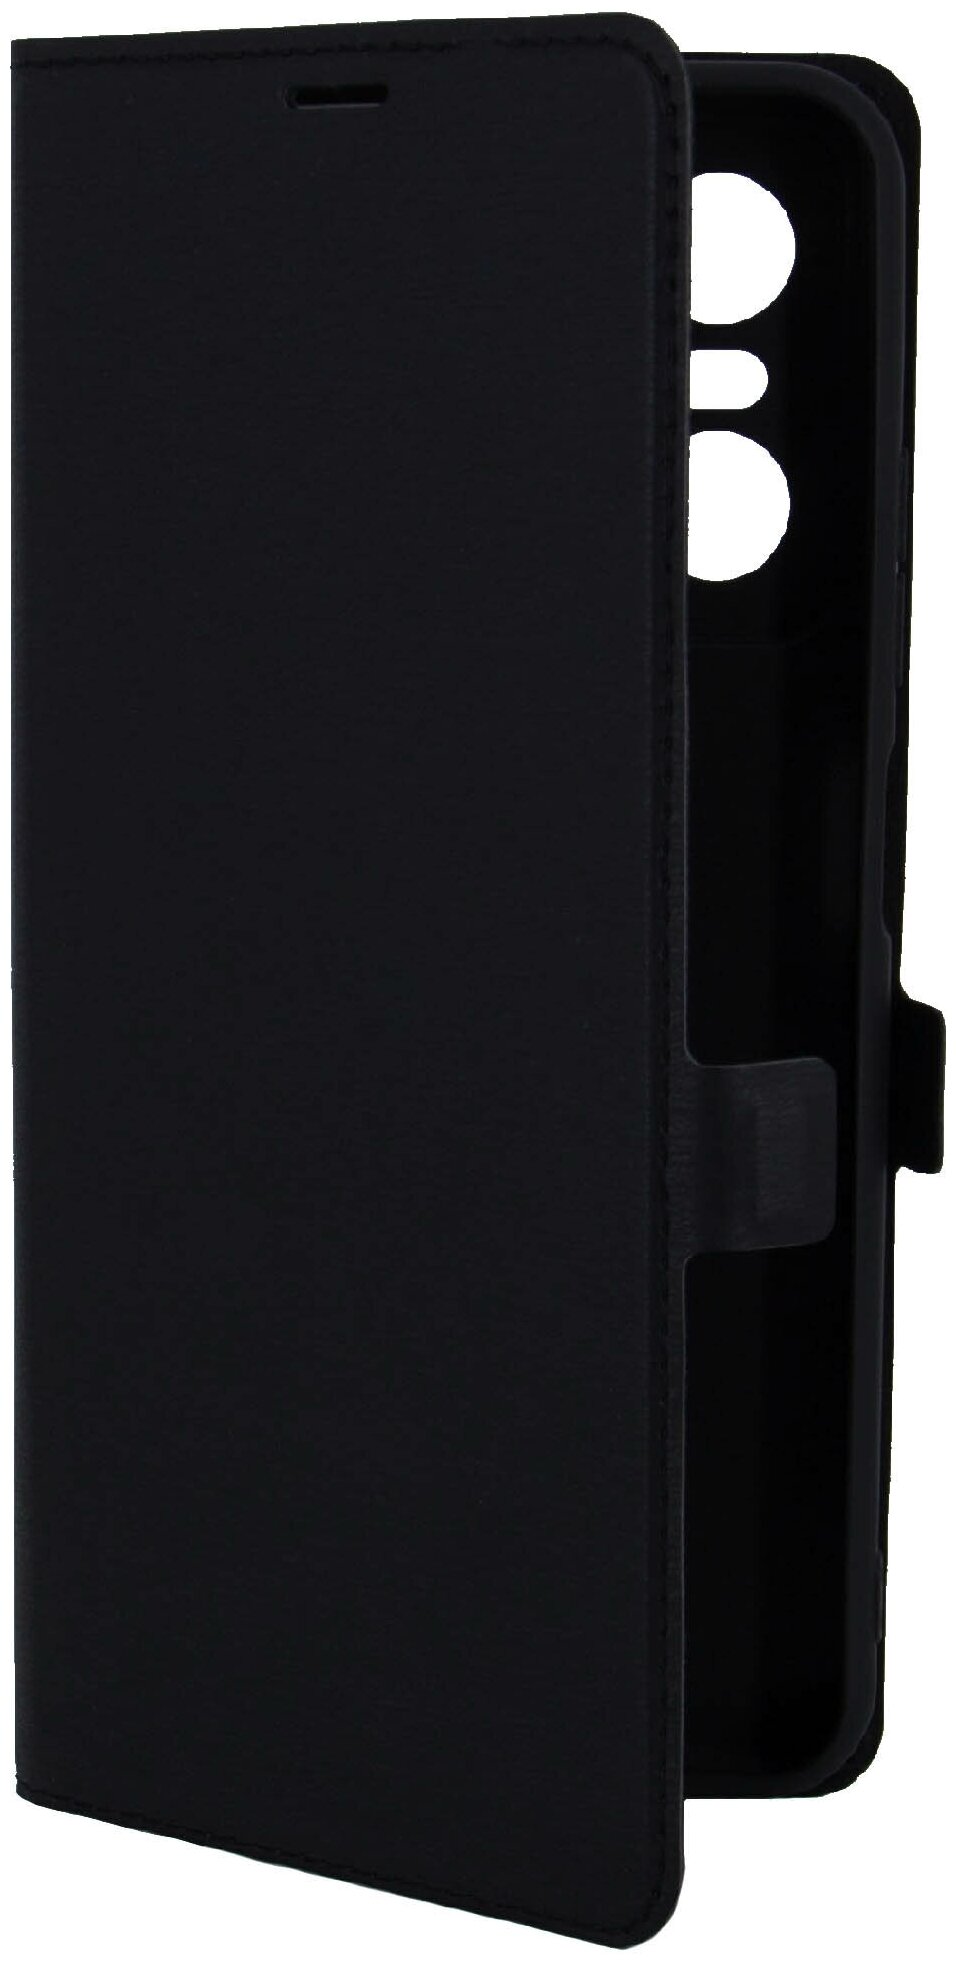 Чехол на Tecno POP 6 Pro (Техно ПОП 6 Про) черный чехол книжка эко-кожа с функцией подставки отделением для карт и магнитами Book case, Miuko